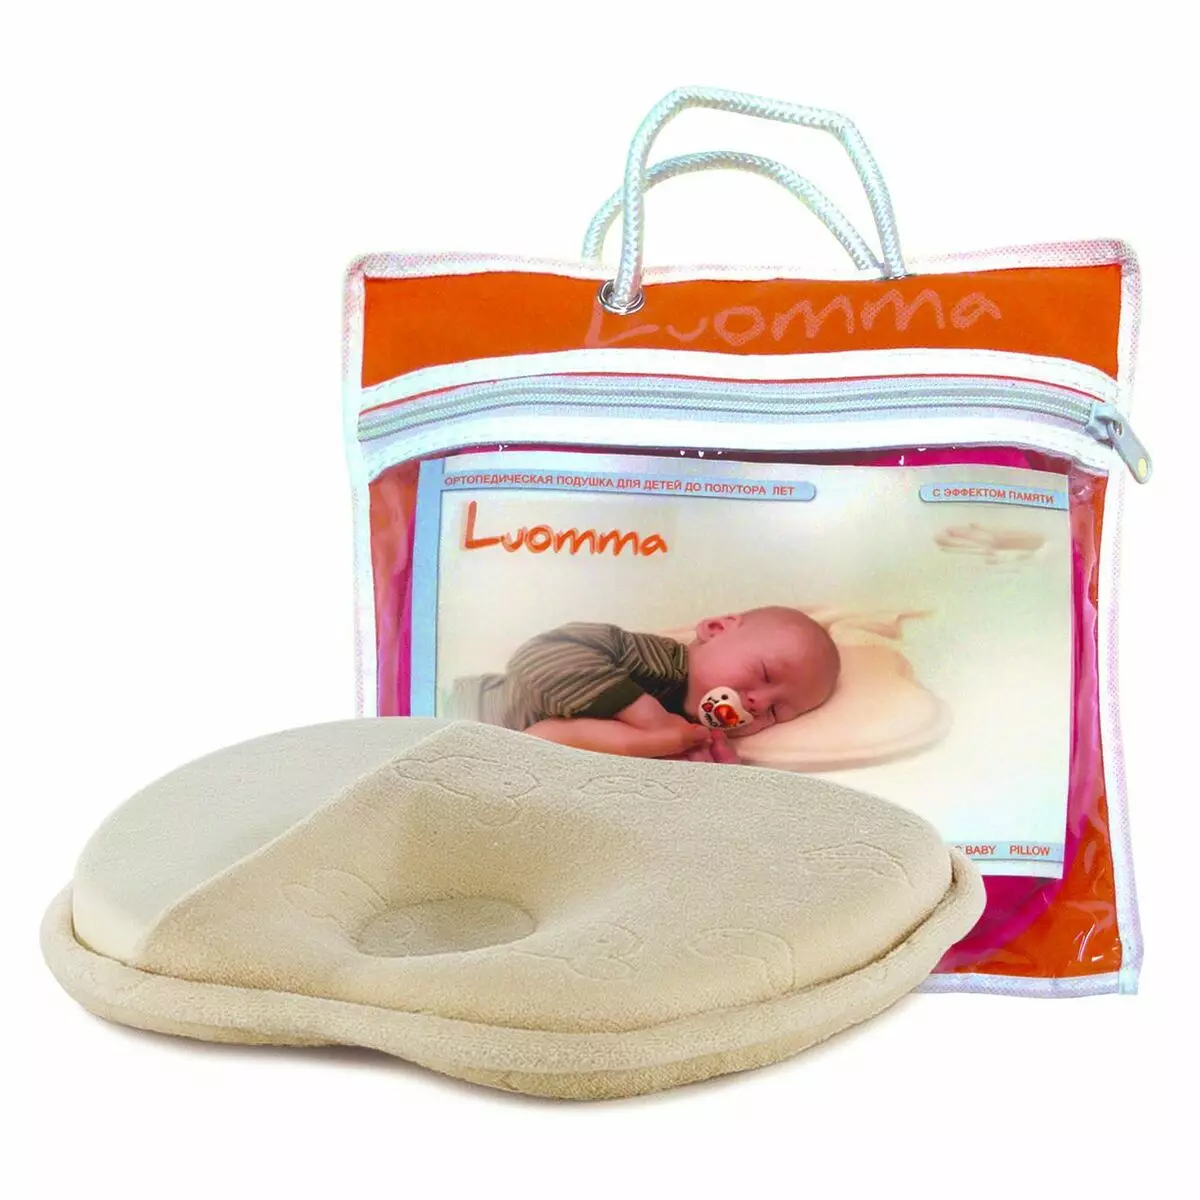 LUOMMA Pillows: Efekt ortopedyczny i pamięci, poduszki dla dzieci z Finlandii dla noworodków i starszych dzieci, recenzje 20745_15